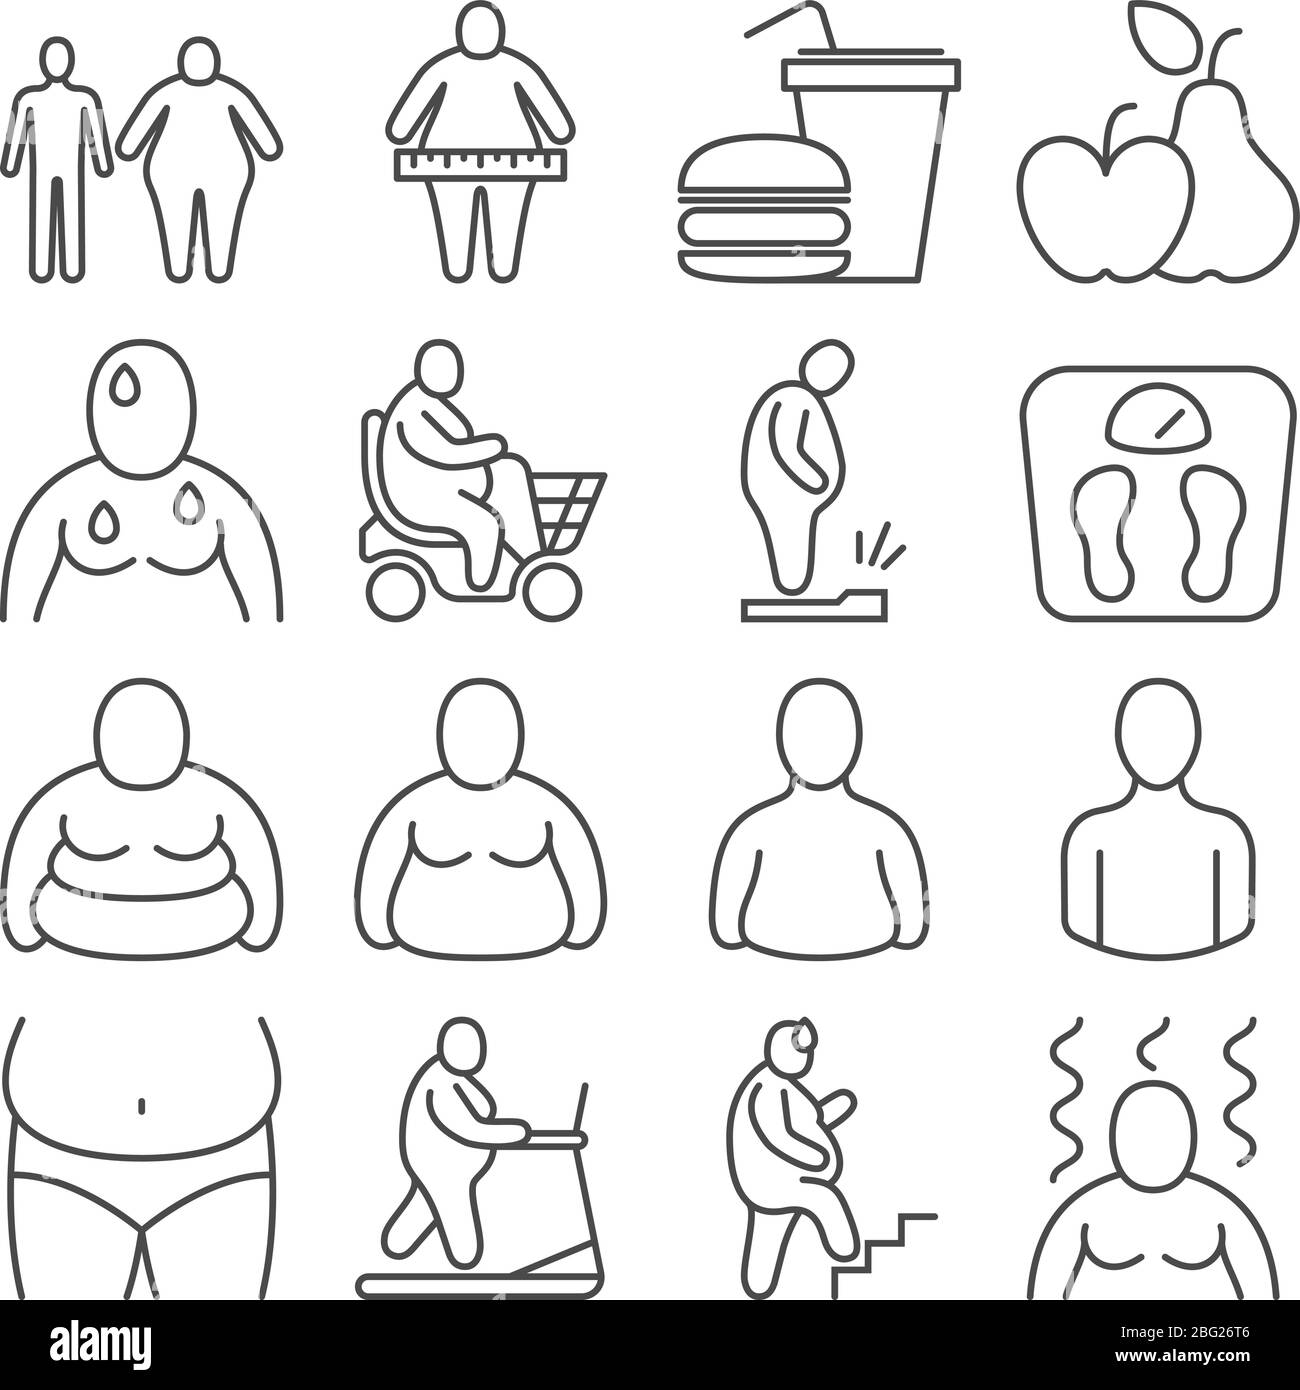 Adipositas Klassifizierung, ungesunde übergewichtige Menschen und Körper Aussehen Ebenen Vektor-Linien-Symbole. Menschen Körper Übergewicht und Adipositas Illustration Stock Vektor